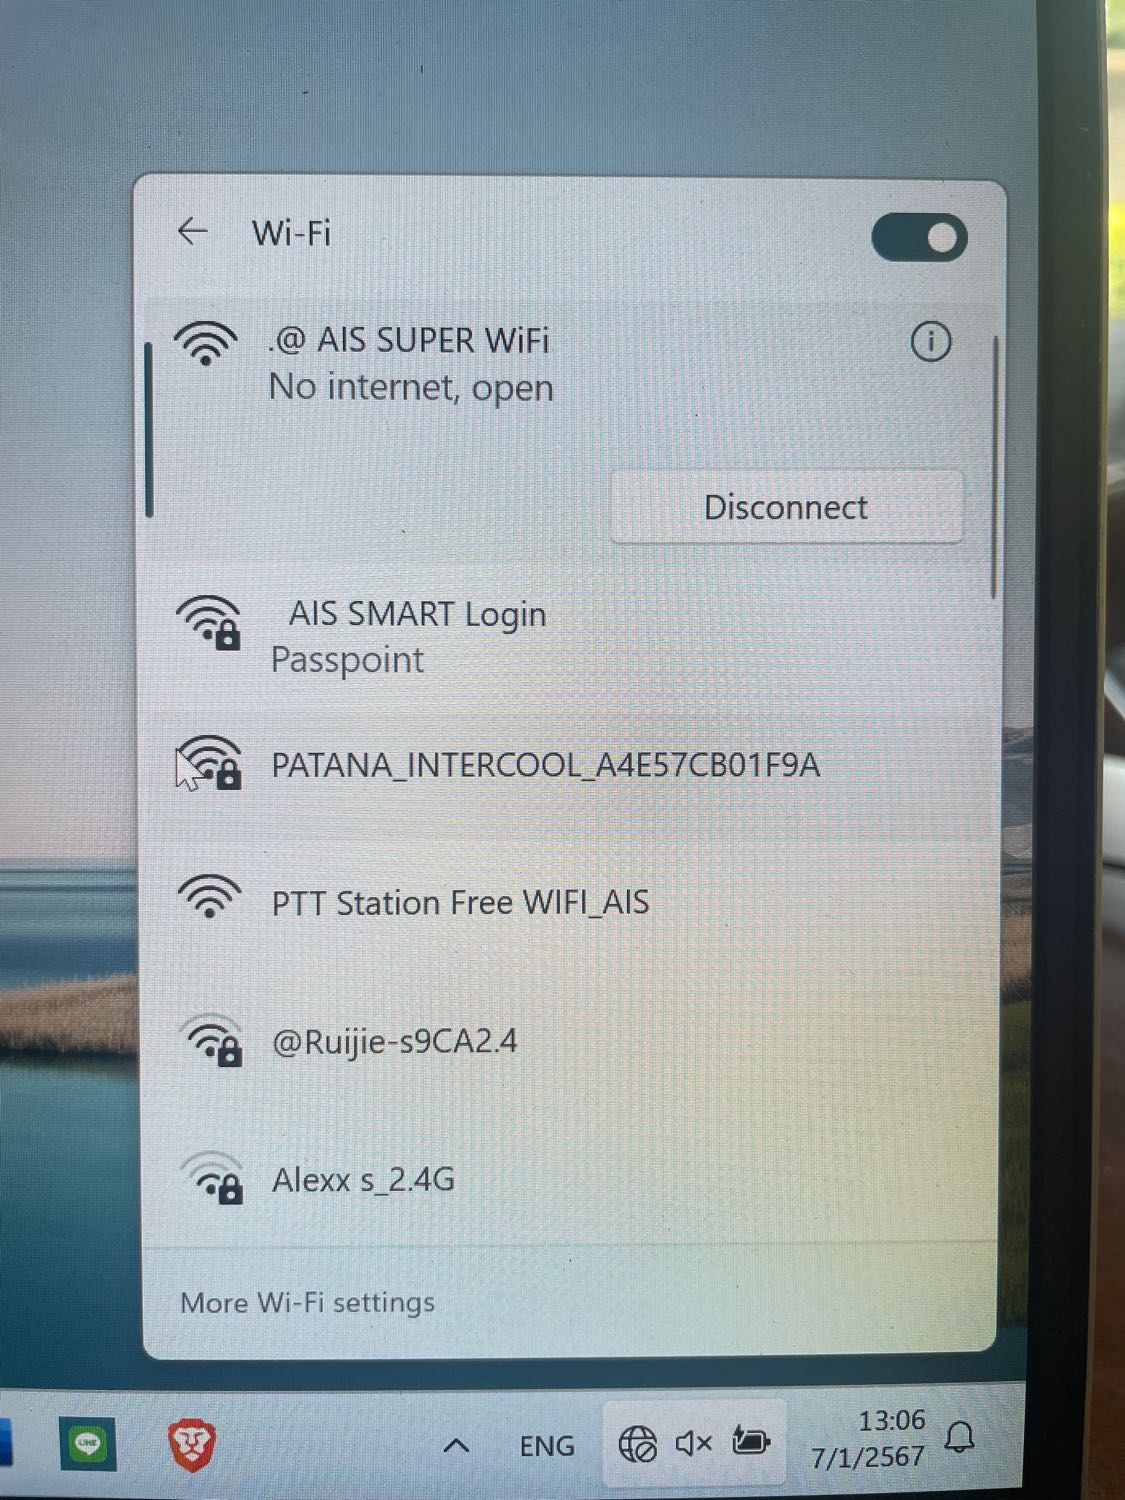 โน๊ตบุ๊คเชื่อม Wifi สาธารณะไม่ได้ ขึ้น No Internet Pantip